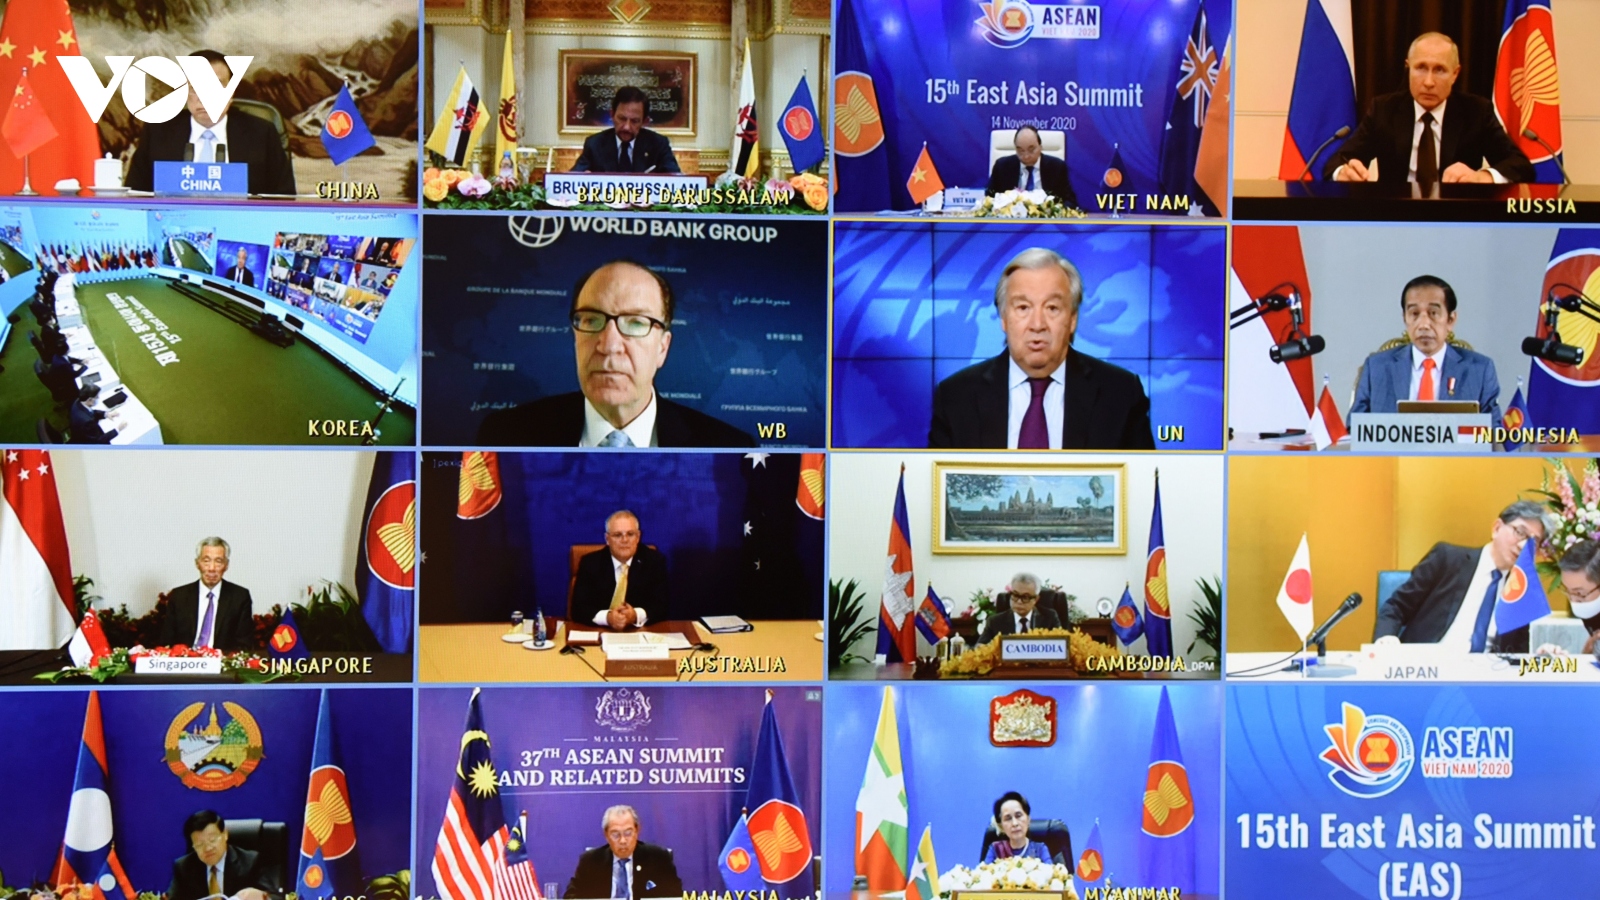 Hội nghị Cấp cao Đông Á ghi nhận nỗ lực đảm bảo hòa bình, ổn định ở Biển Đông